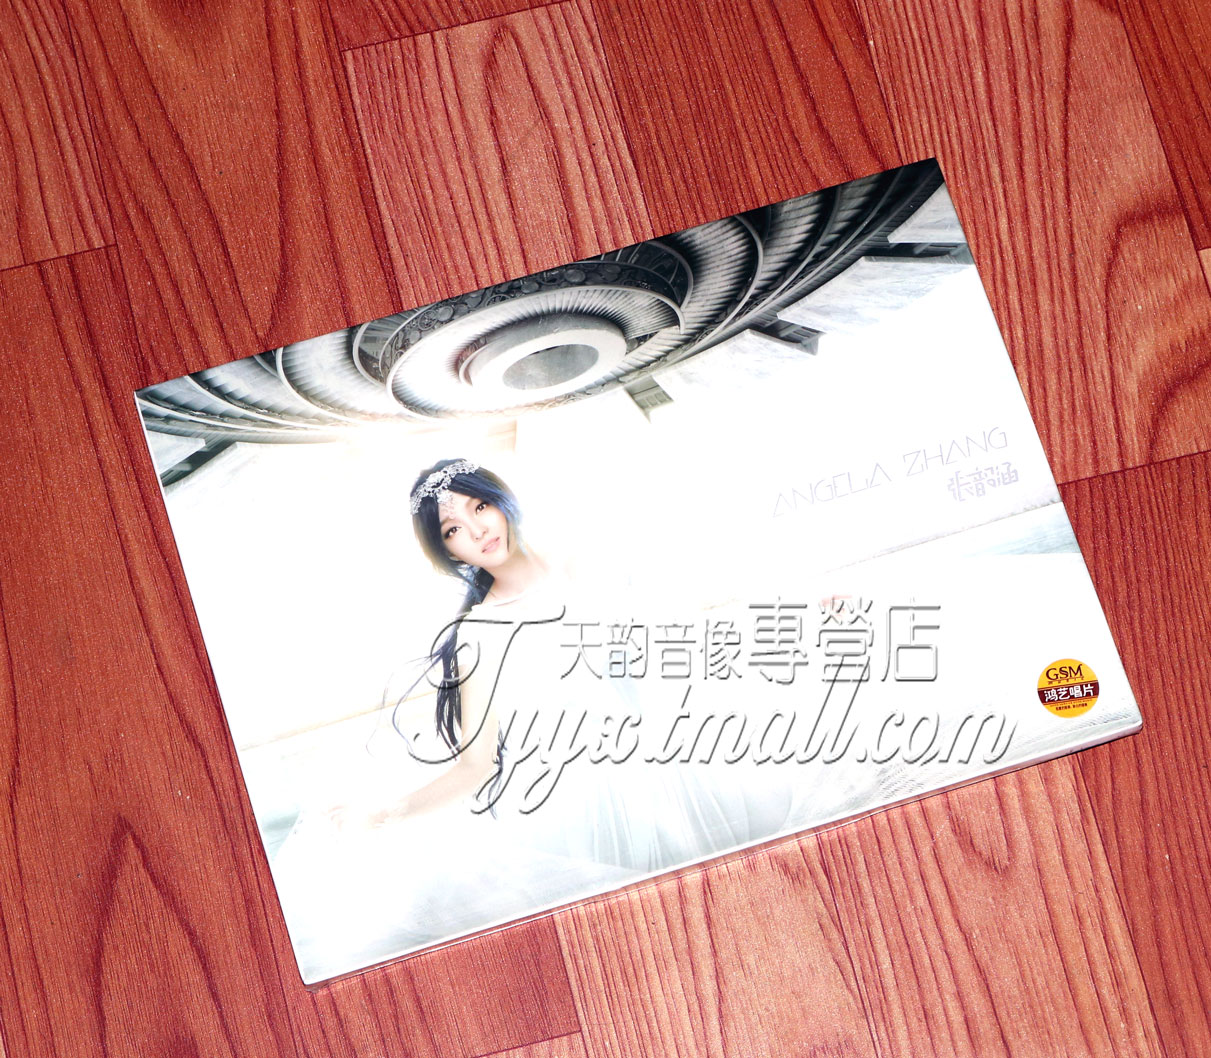 正版张韶涵2014新专辑 angela zhang 1CD为爱而活